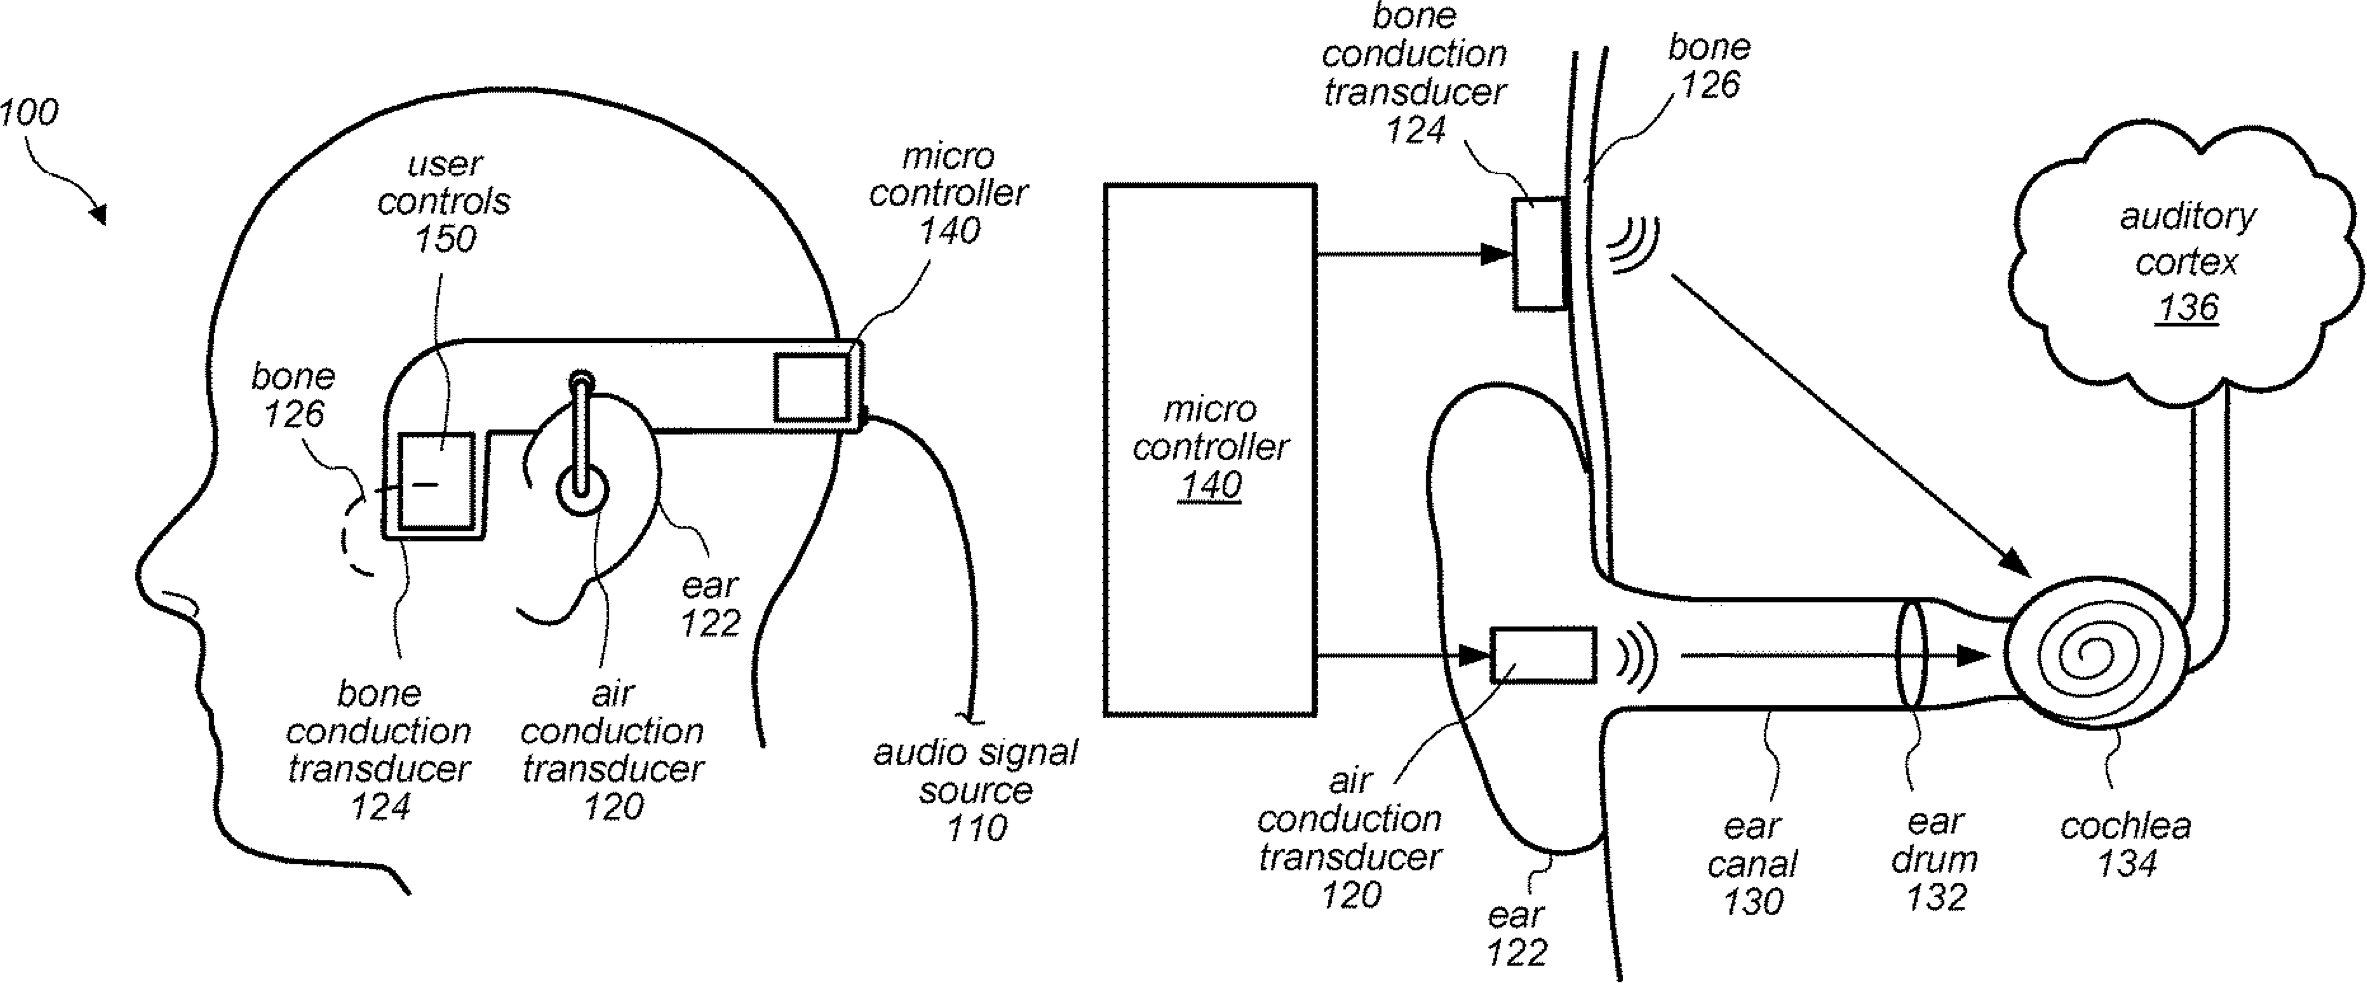 Patente que cobre transmissão de áudio por condução óssea